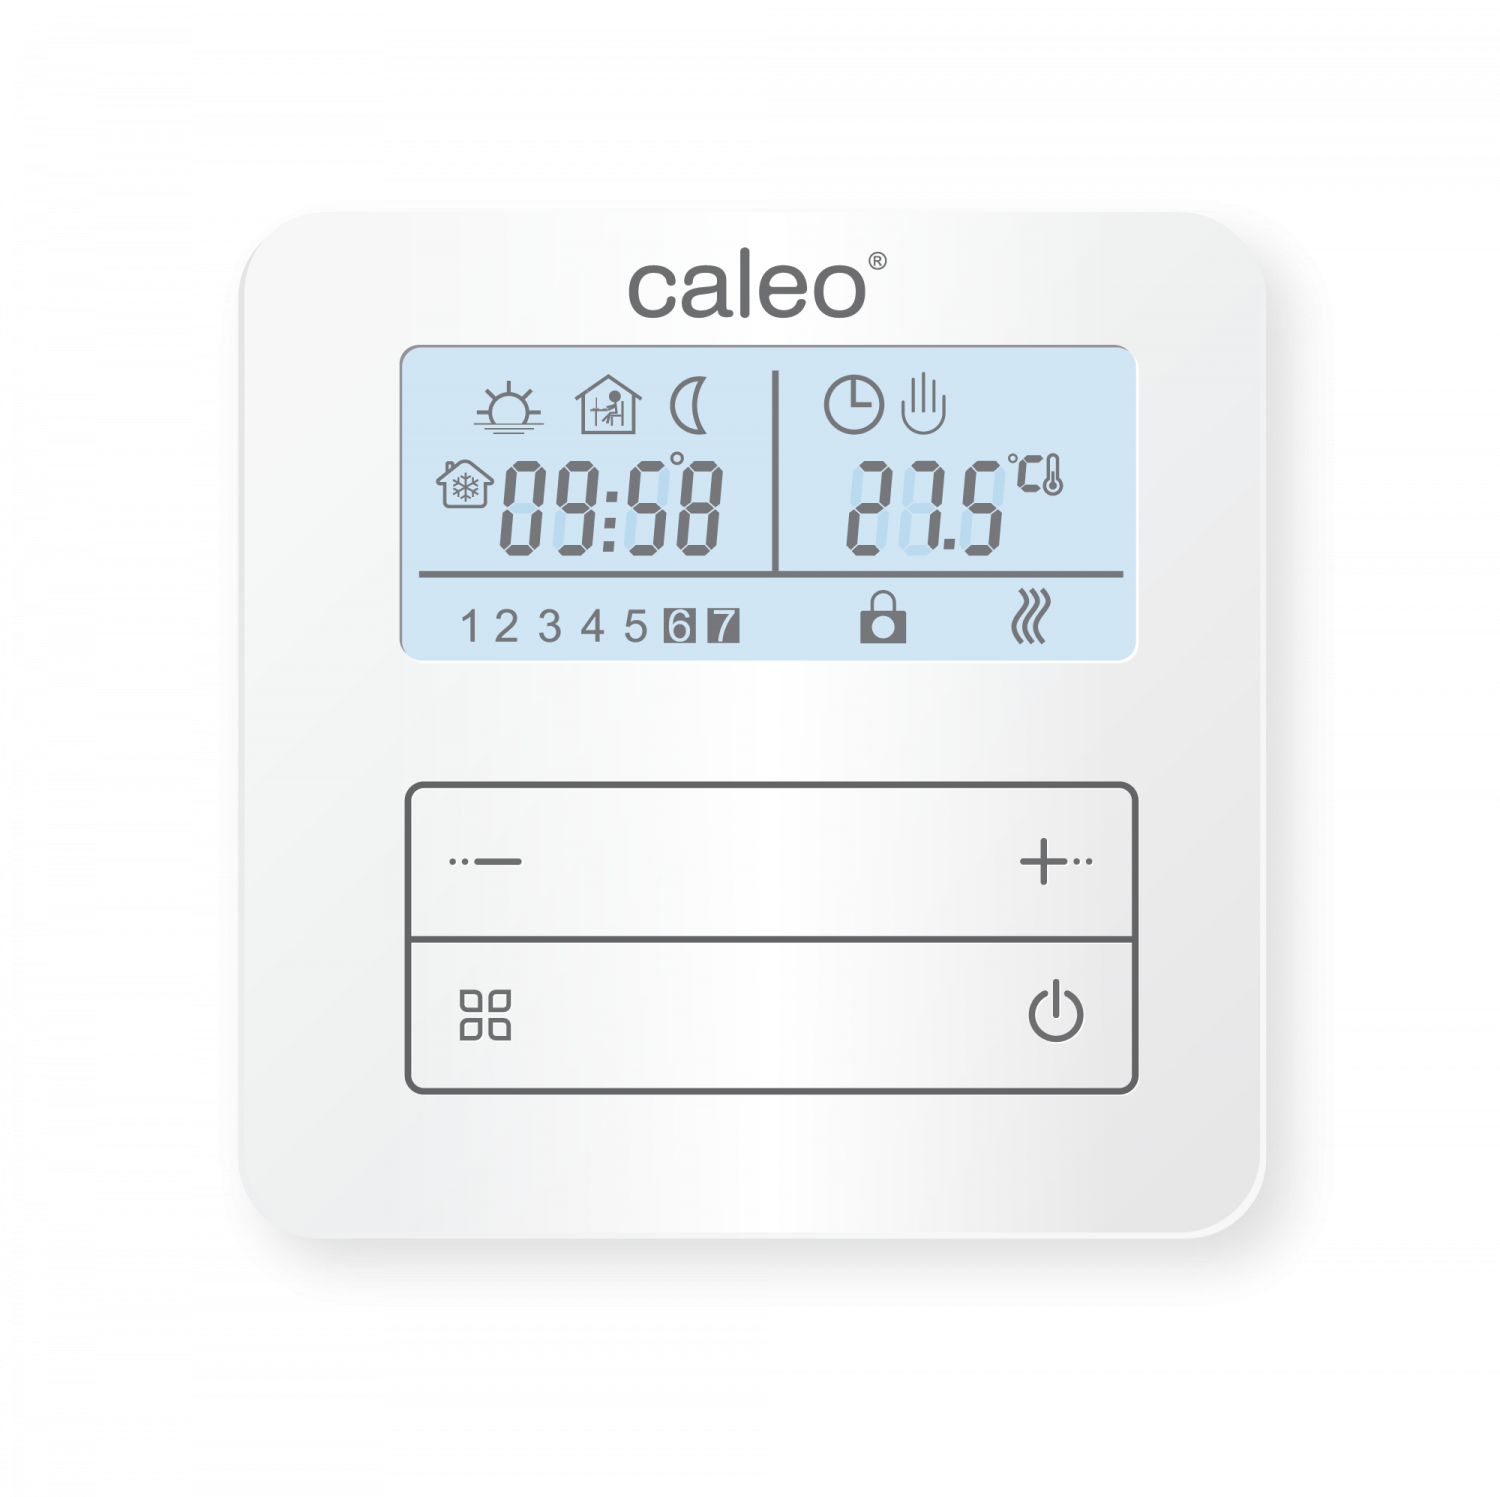 Накладные терморегуляторы Caleo Терморегулятор CALEO С950 накладной цифровой программируемый 3.5 кВт